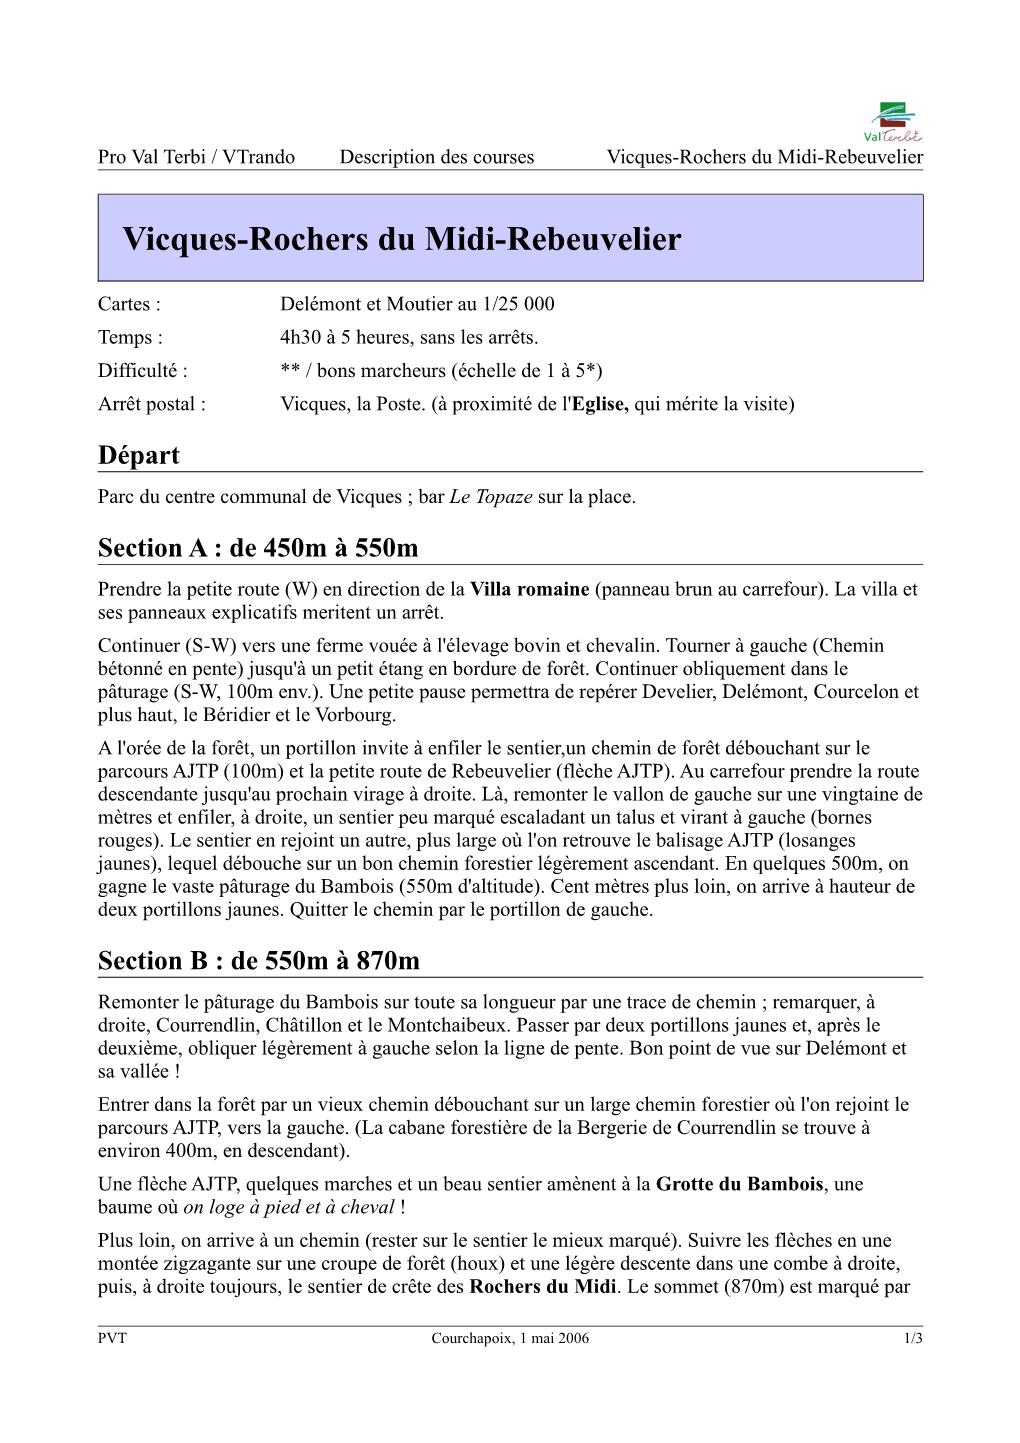 Vicques-Rochers Du Midi-Rebeuvelier